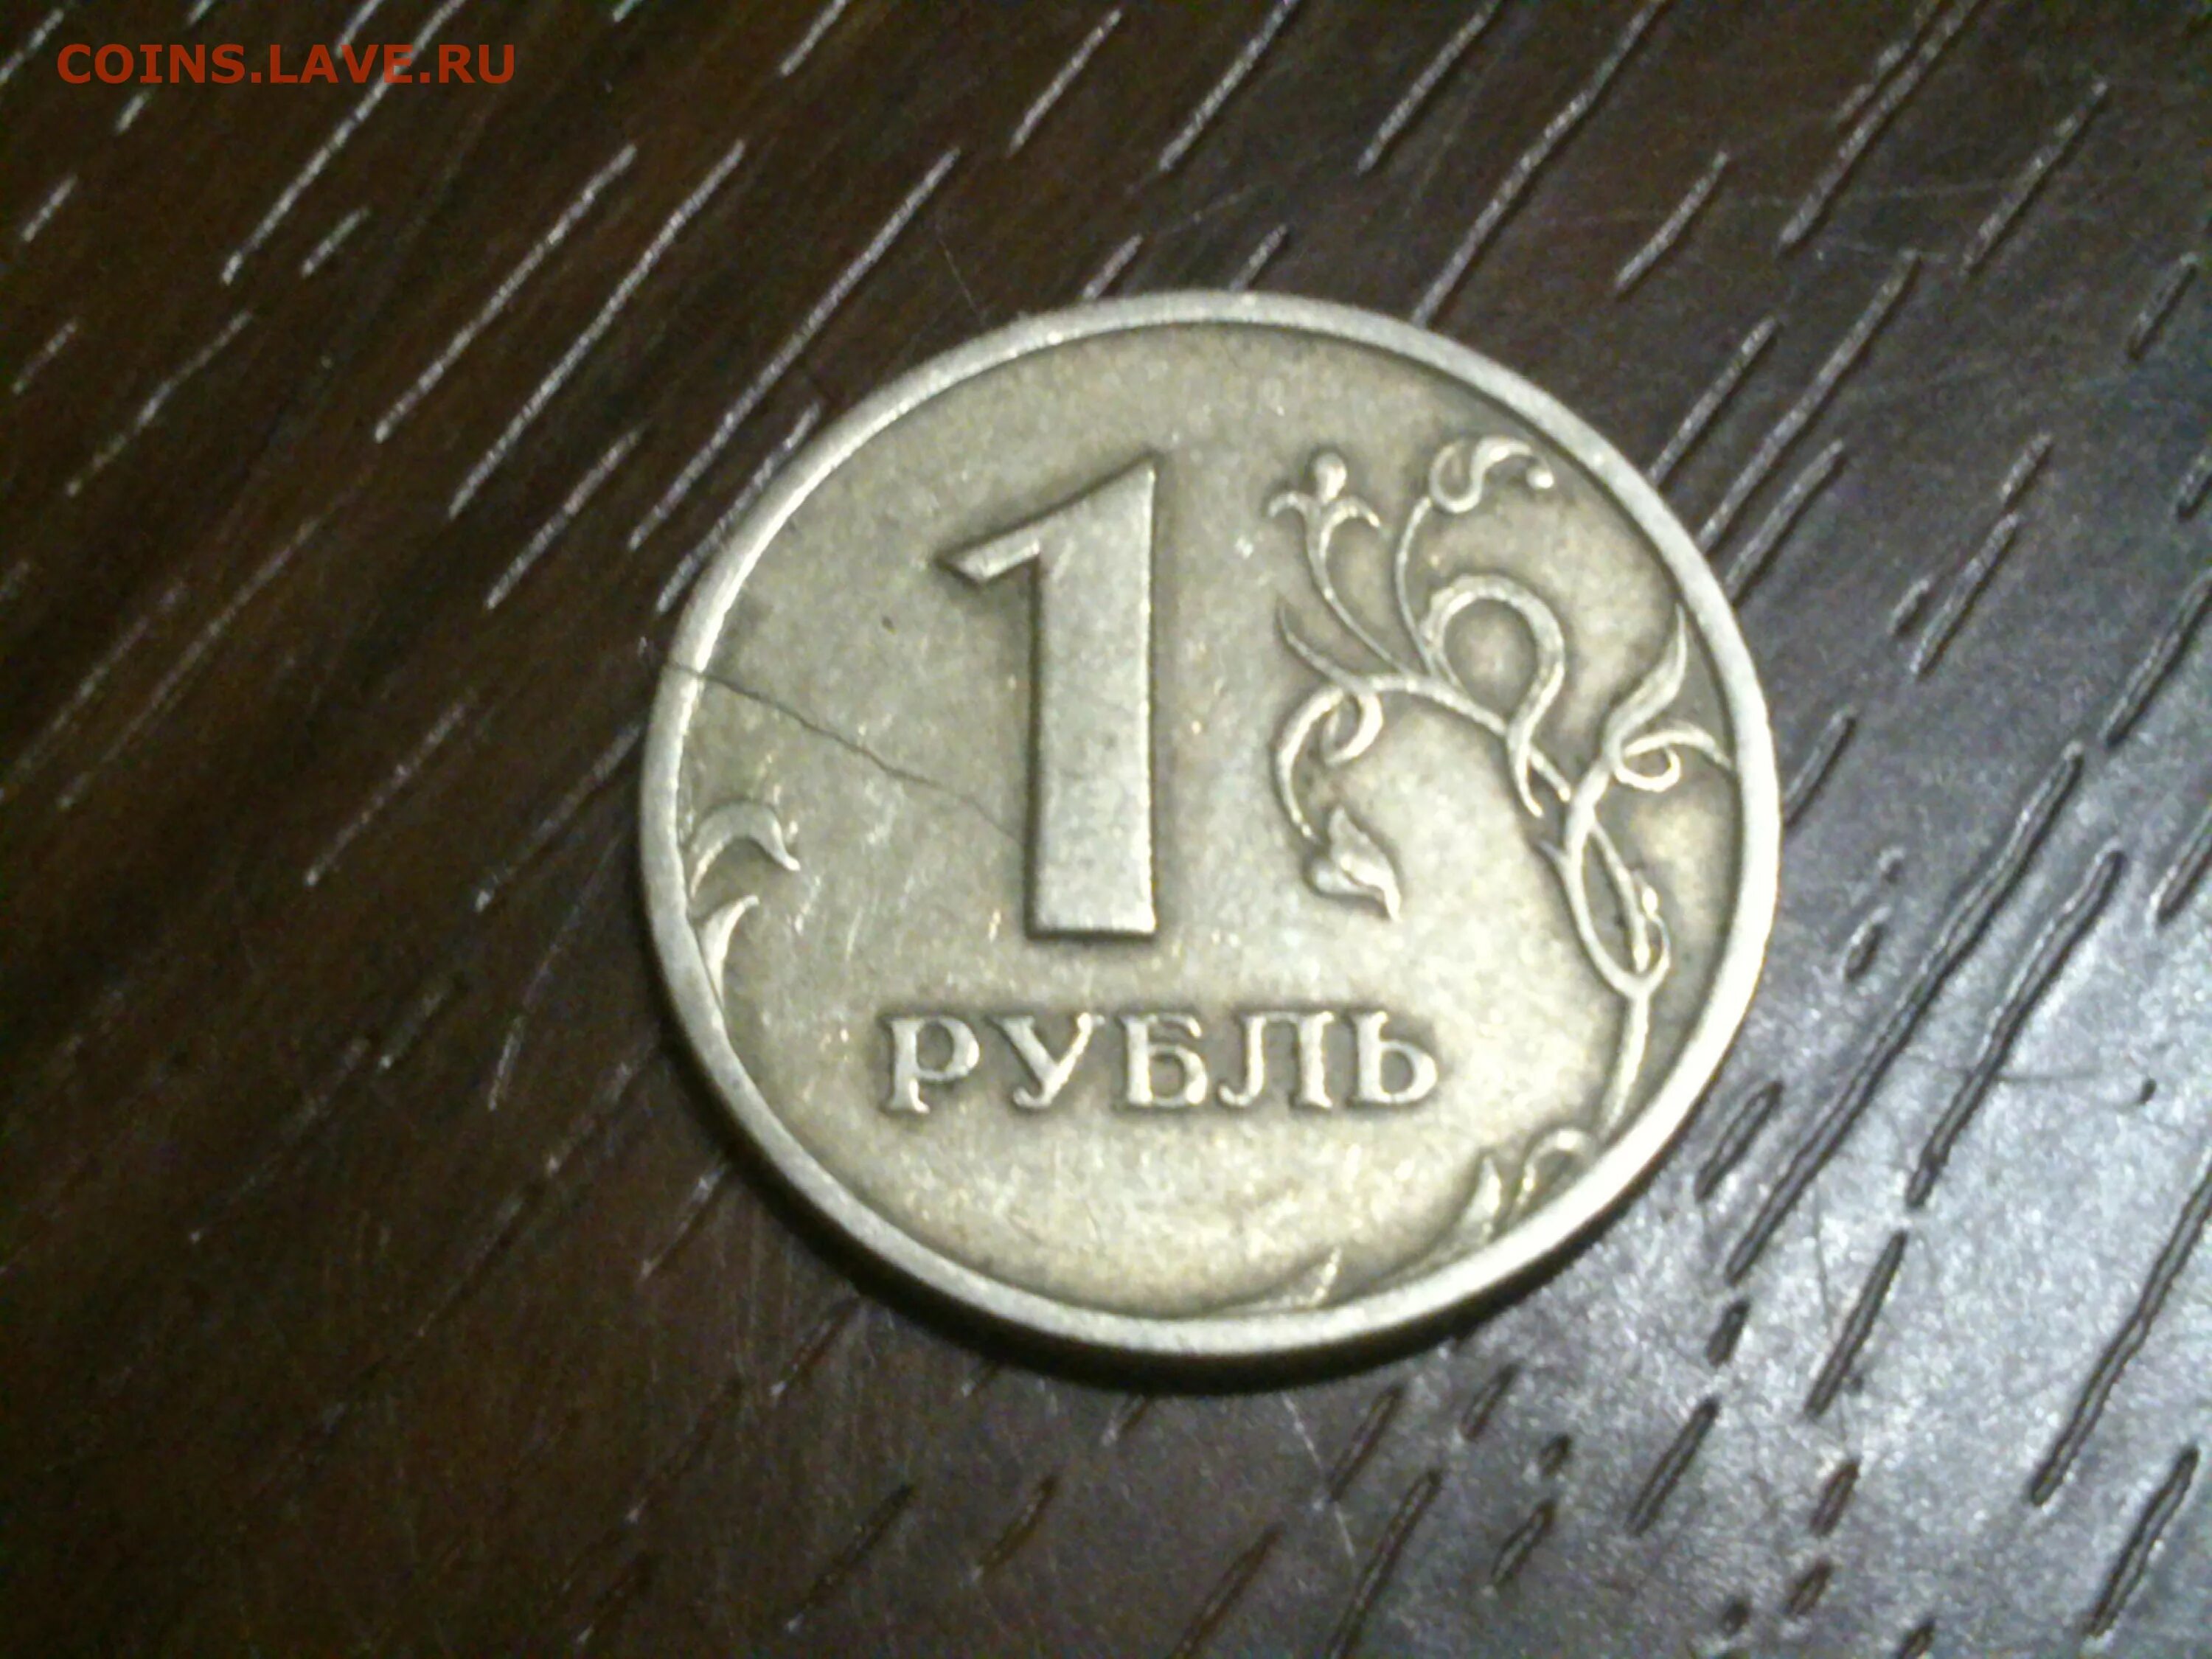 Монета 1 рубль 1998 года. 1 Рубль 1998 года. Рубли до 1998. Беларусь 1 рубль, 1998. Монета с трещиной.